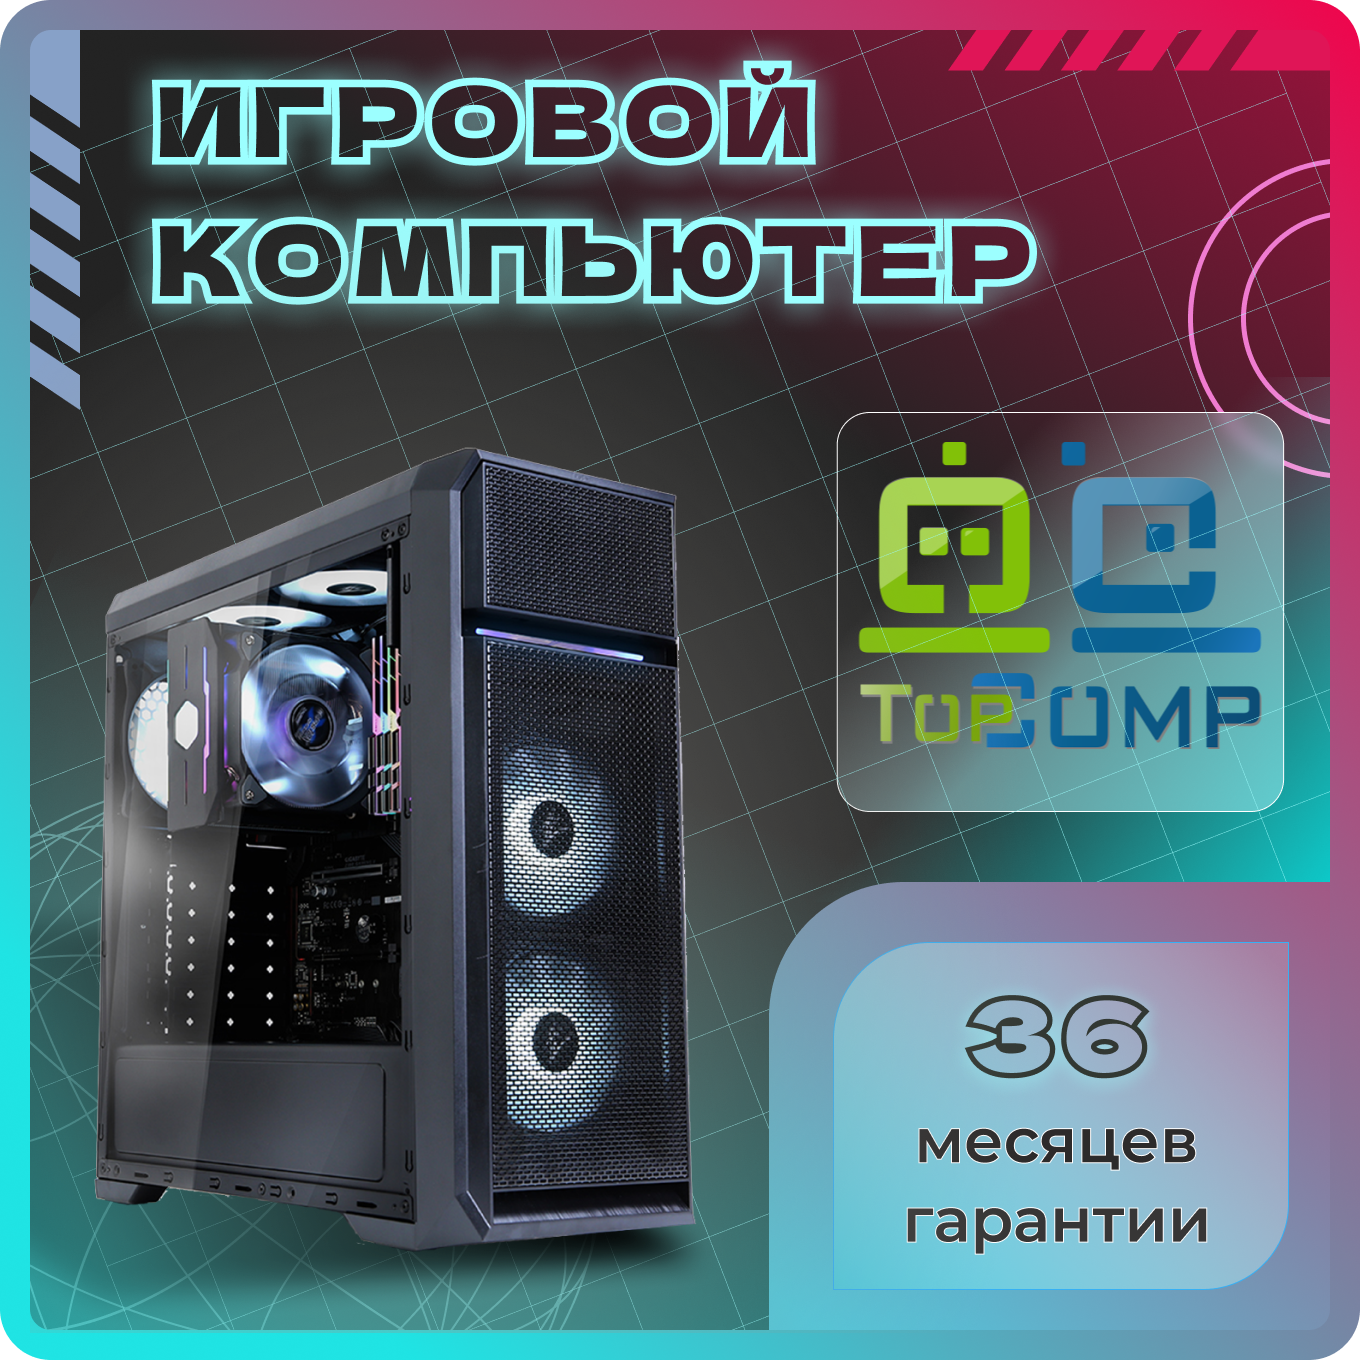 ПК TopComp VR 91902602 (Intel Core i5 10400F 2.9 ГГц, RAM 16 Гб, 240 Гб SSD, NVIDIA GeForce GTX 1660 SUPER 6 Гб, Без ОС)